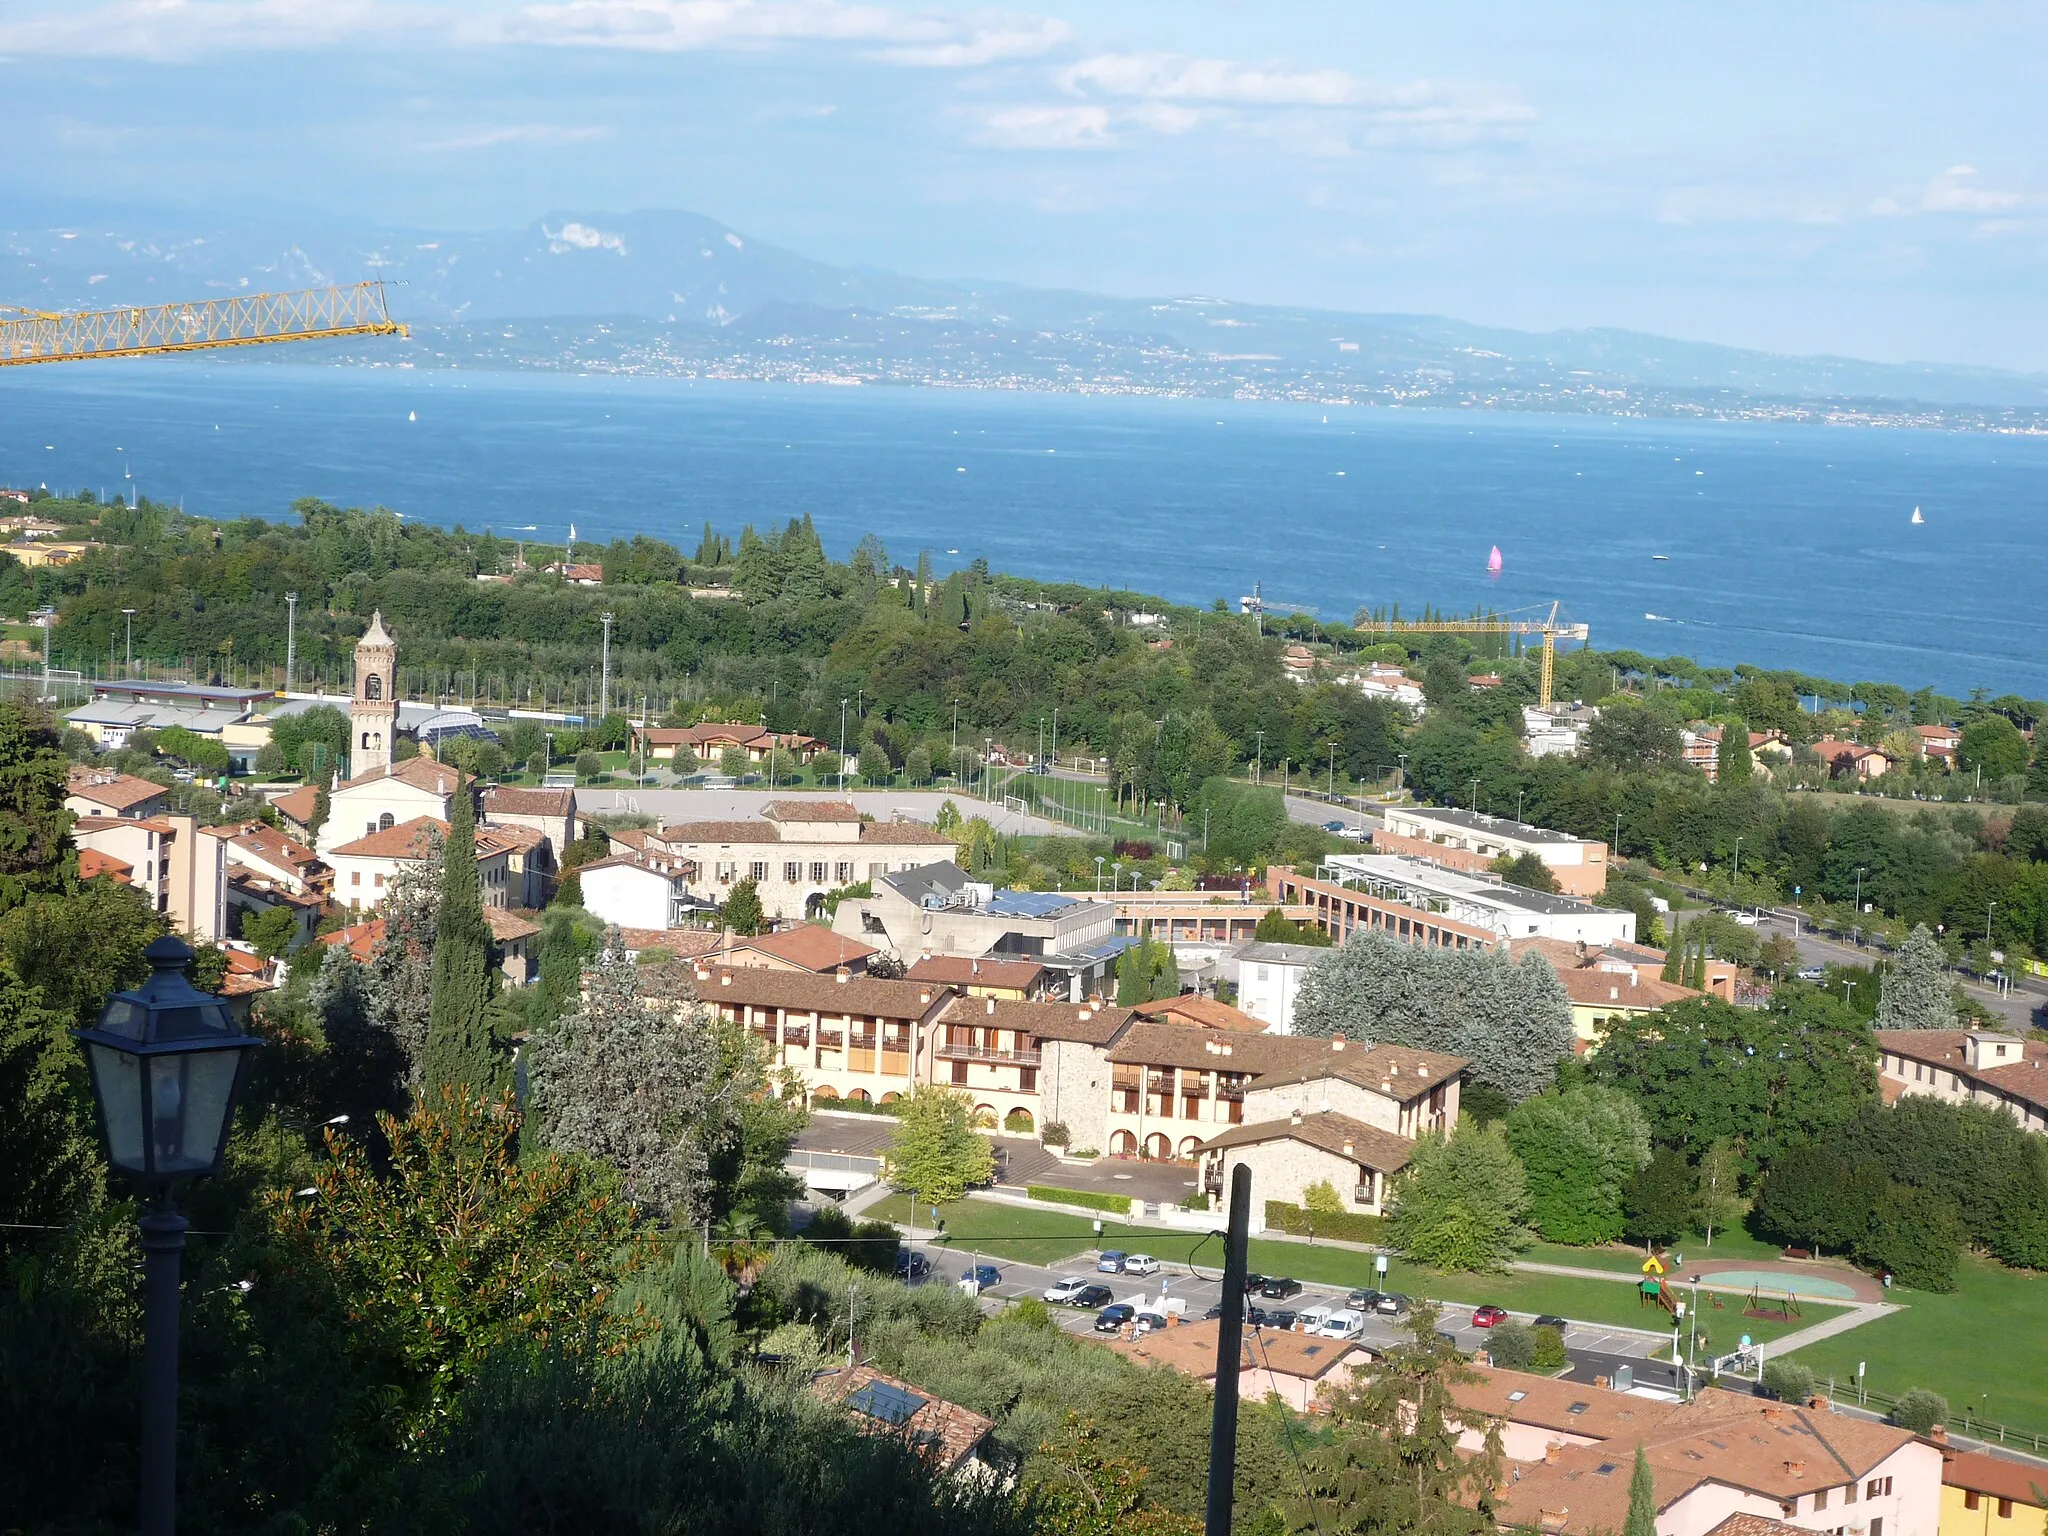 Image of Moniga del Garda